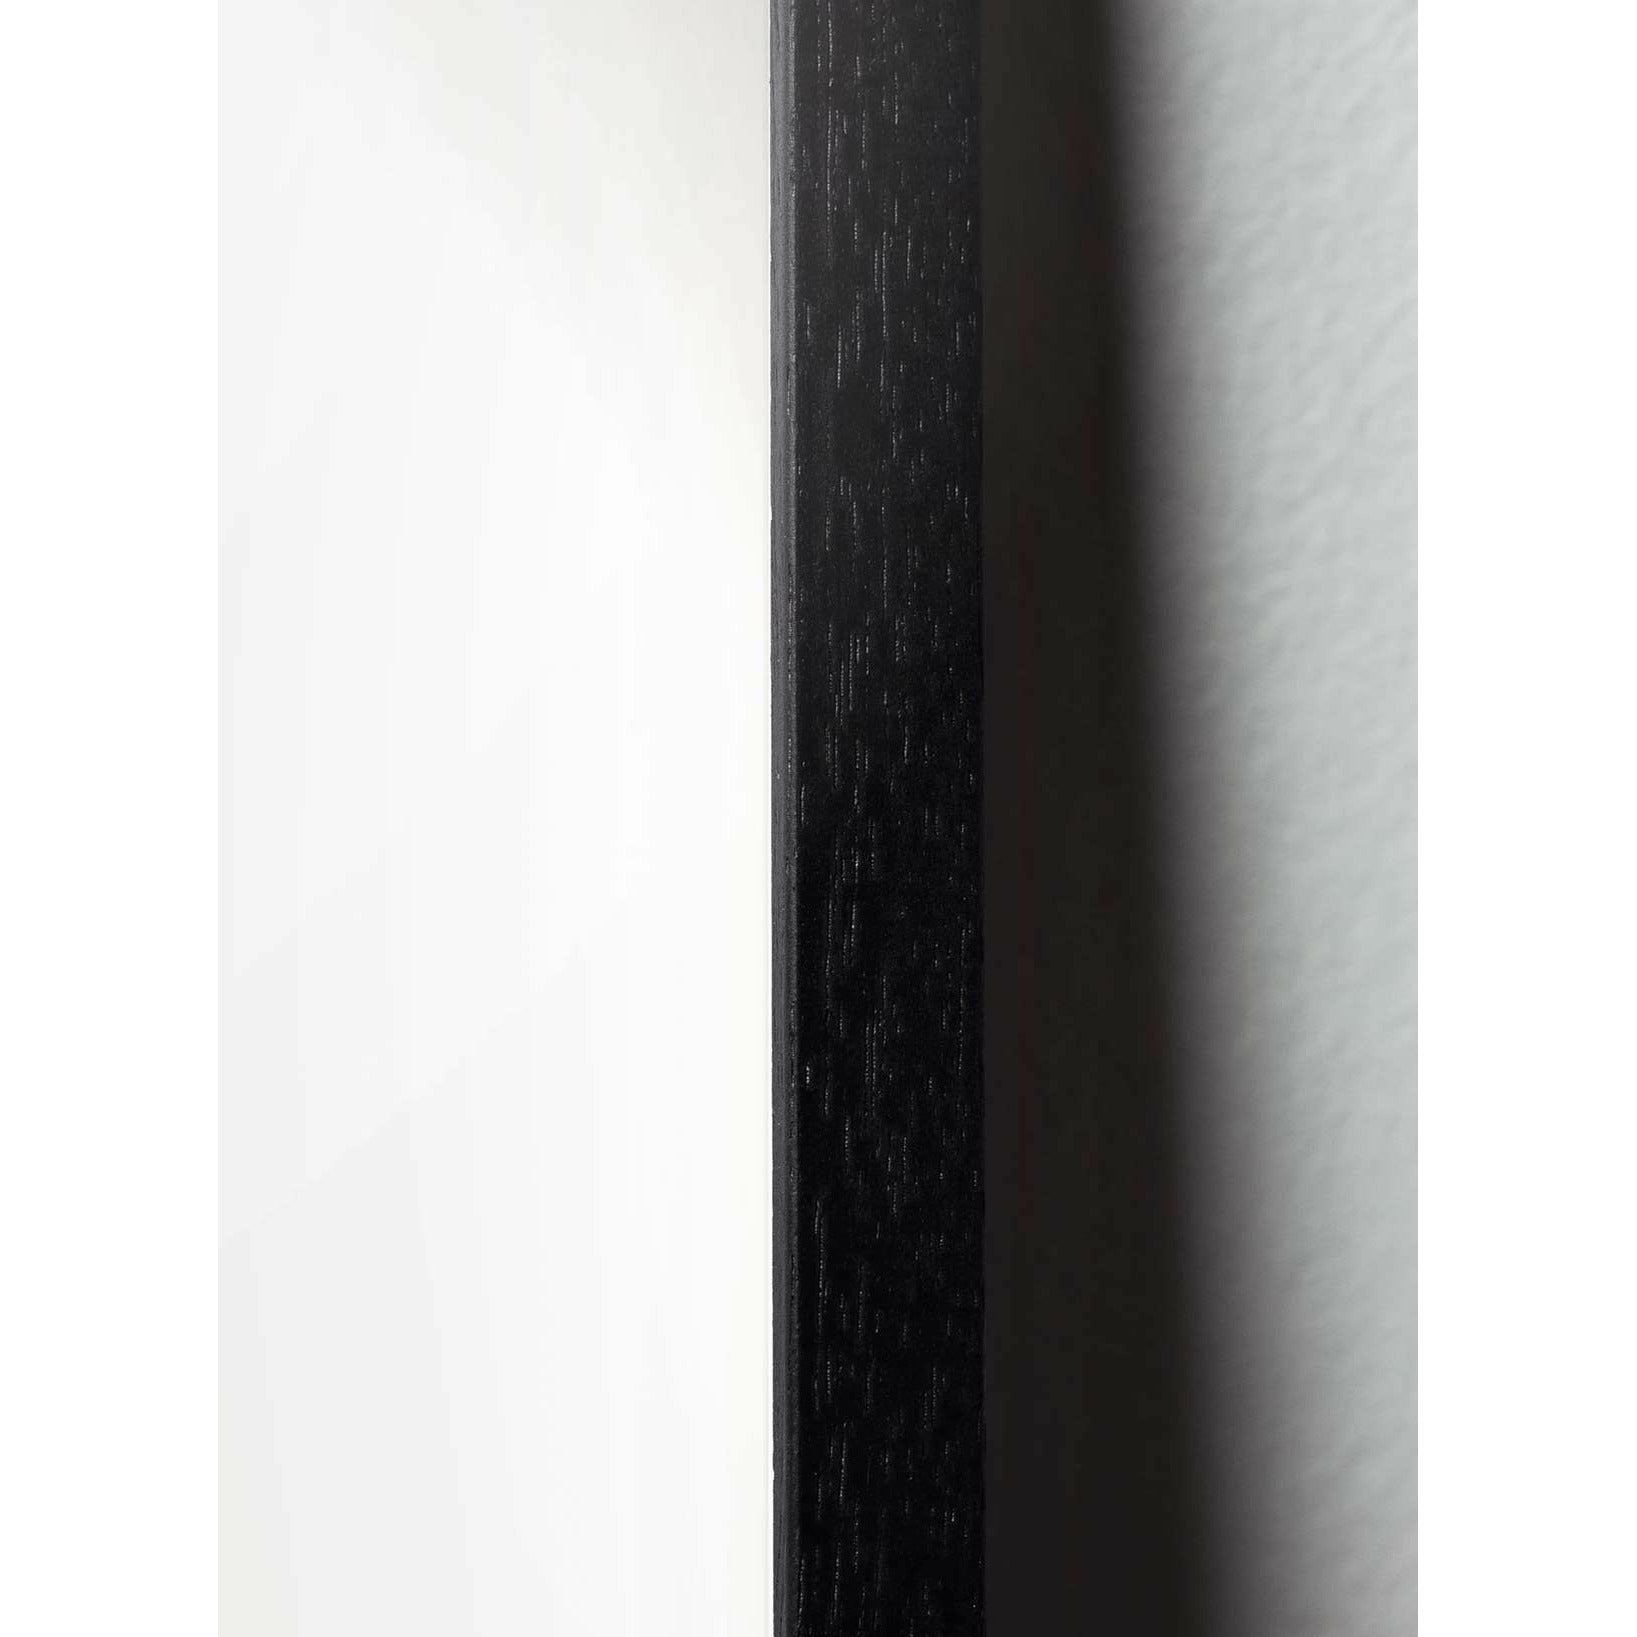 brainchild Swan Classic Poster, frame in zwart gelakt hout 30x40 cm, lichtblauwe achtergrond